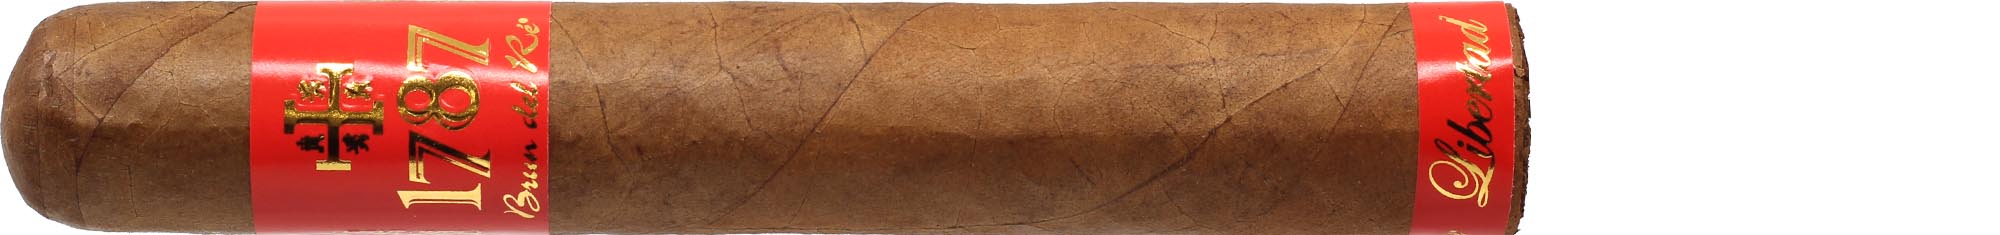 Brun del Ré Zigarren 1787 Libertad Supremo